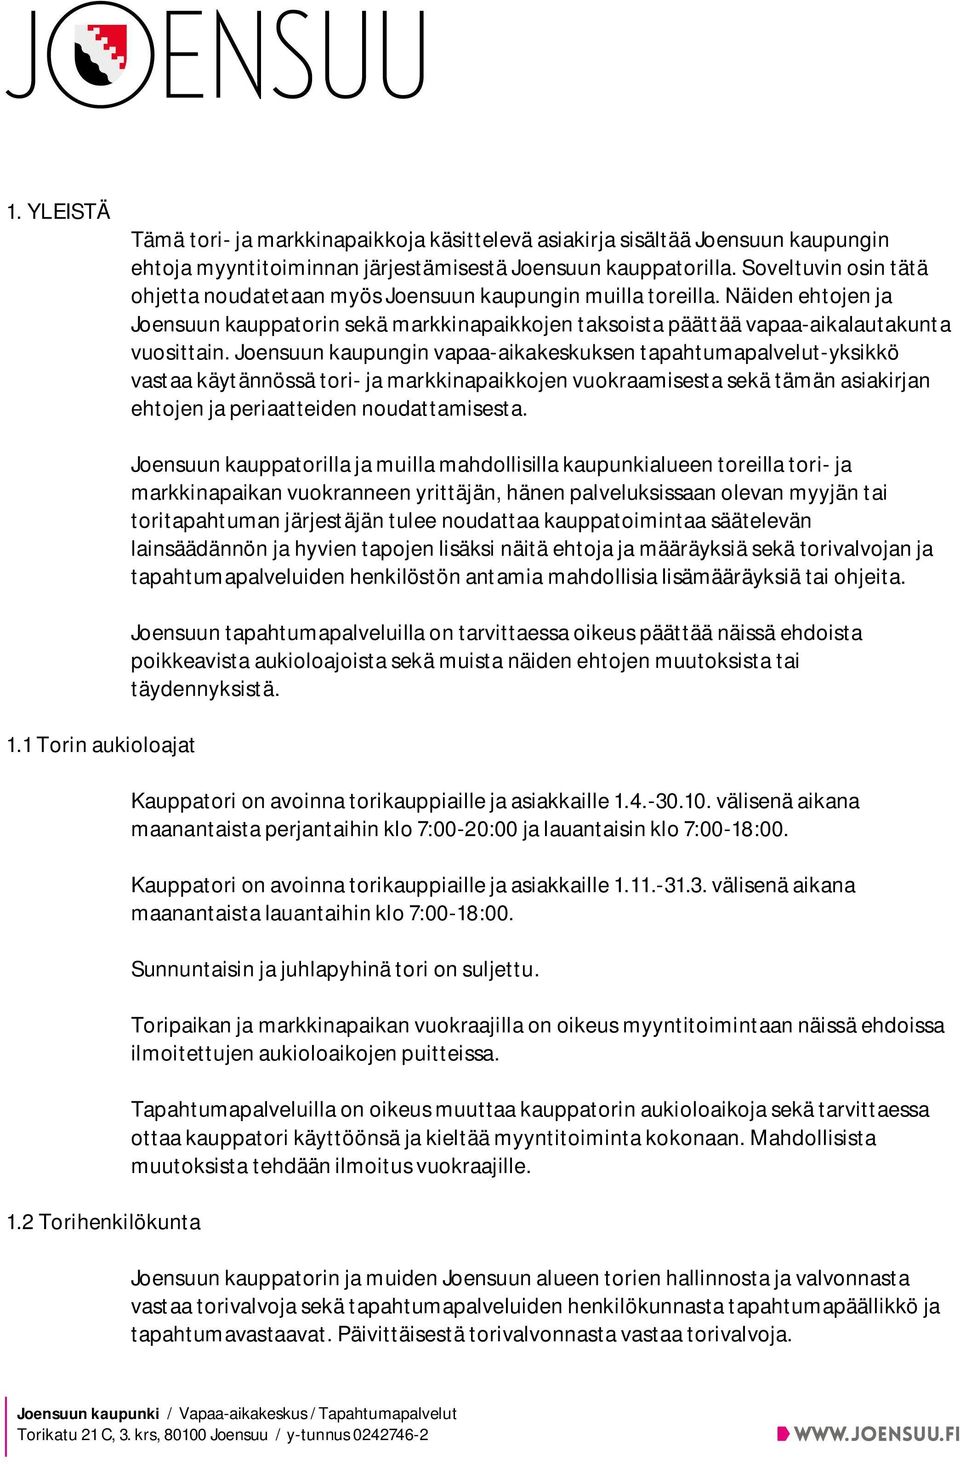 Joensuun kaupungin vapaa-aikakeskuksen tapahtumapalvelut-yksikkö vastaa käytännössä tori- ja markkinapaikkojen vuokraamisesta sekä tämän asiakirjan ehtojen ja periaatteiden noudattamisesta. 1.